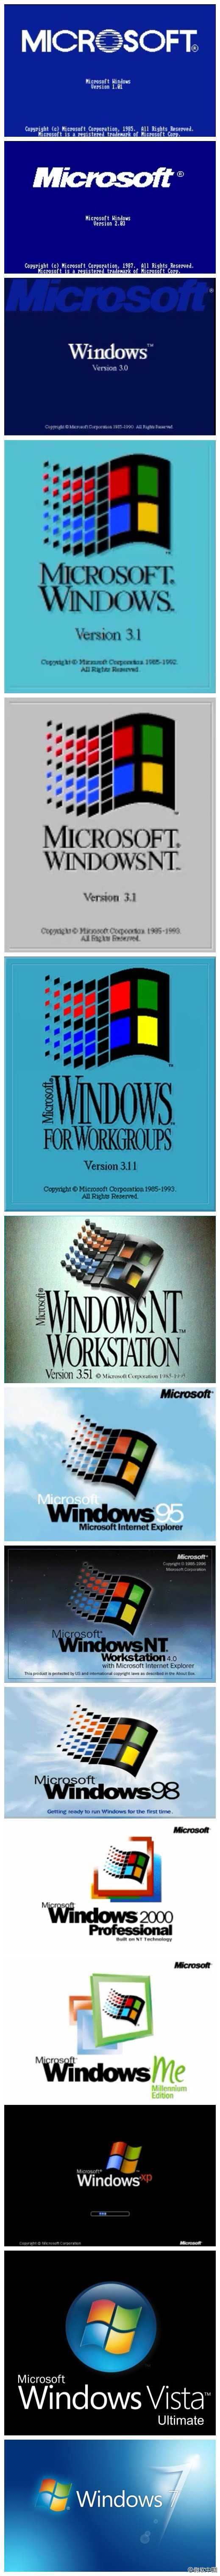 从 1.0 到 11，Windows 不断创新与变革 让 PC 技术更加亲民